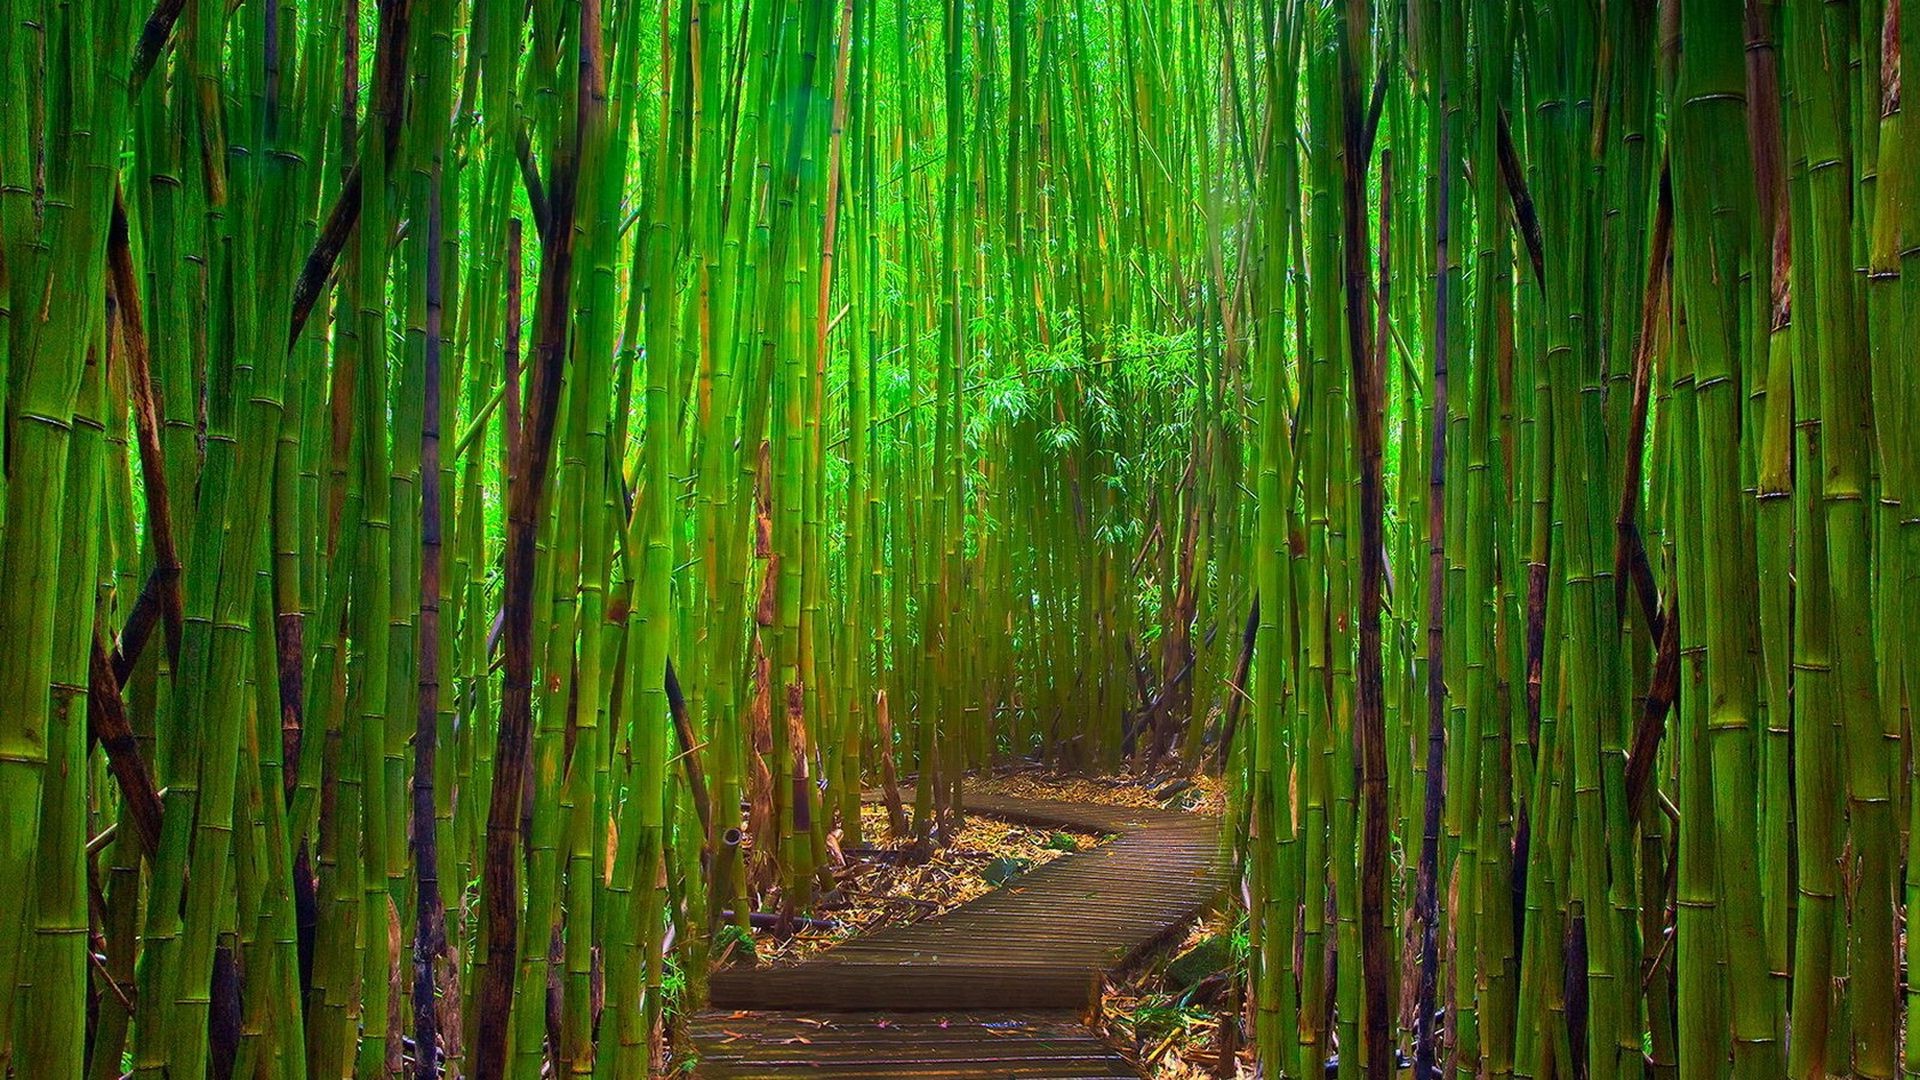 деревья бамбук лист природа пышные древесины флора среды дерево рост рабочего стола рассвет трава текстура экология воды сад рид на открытом воздухе шаблон